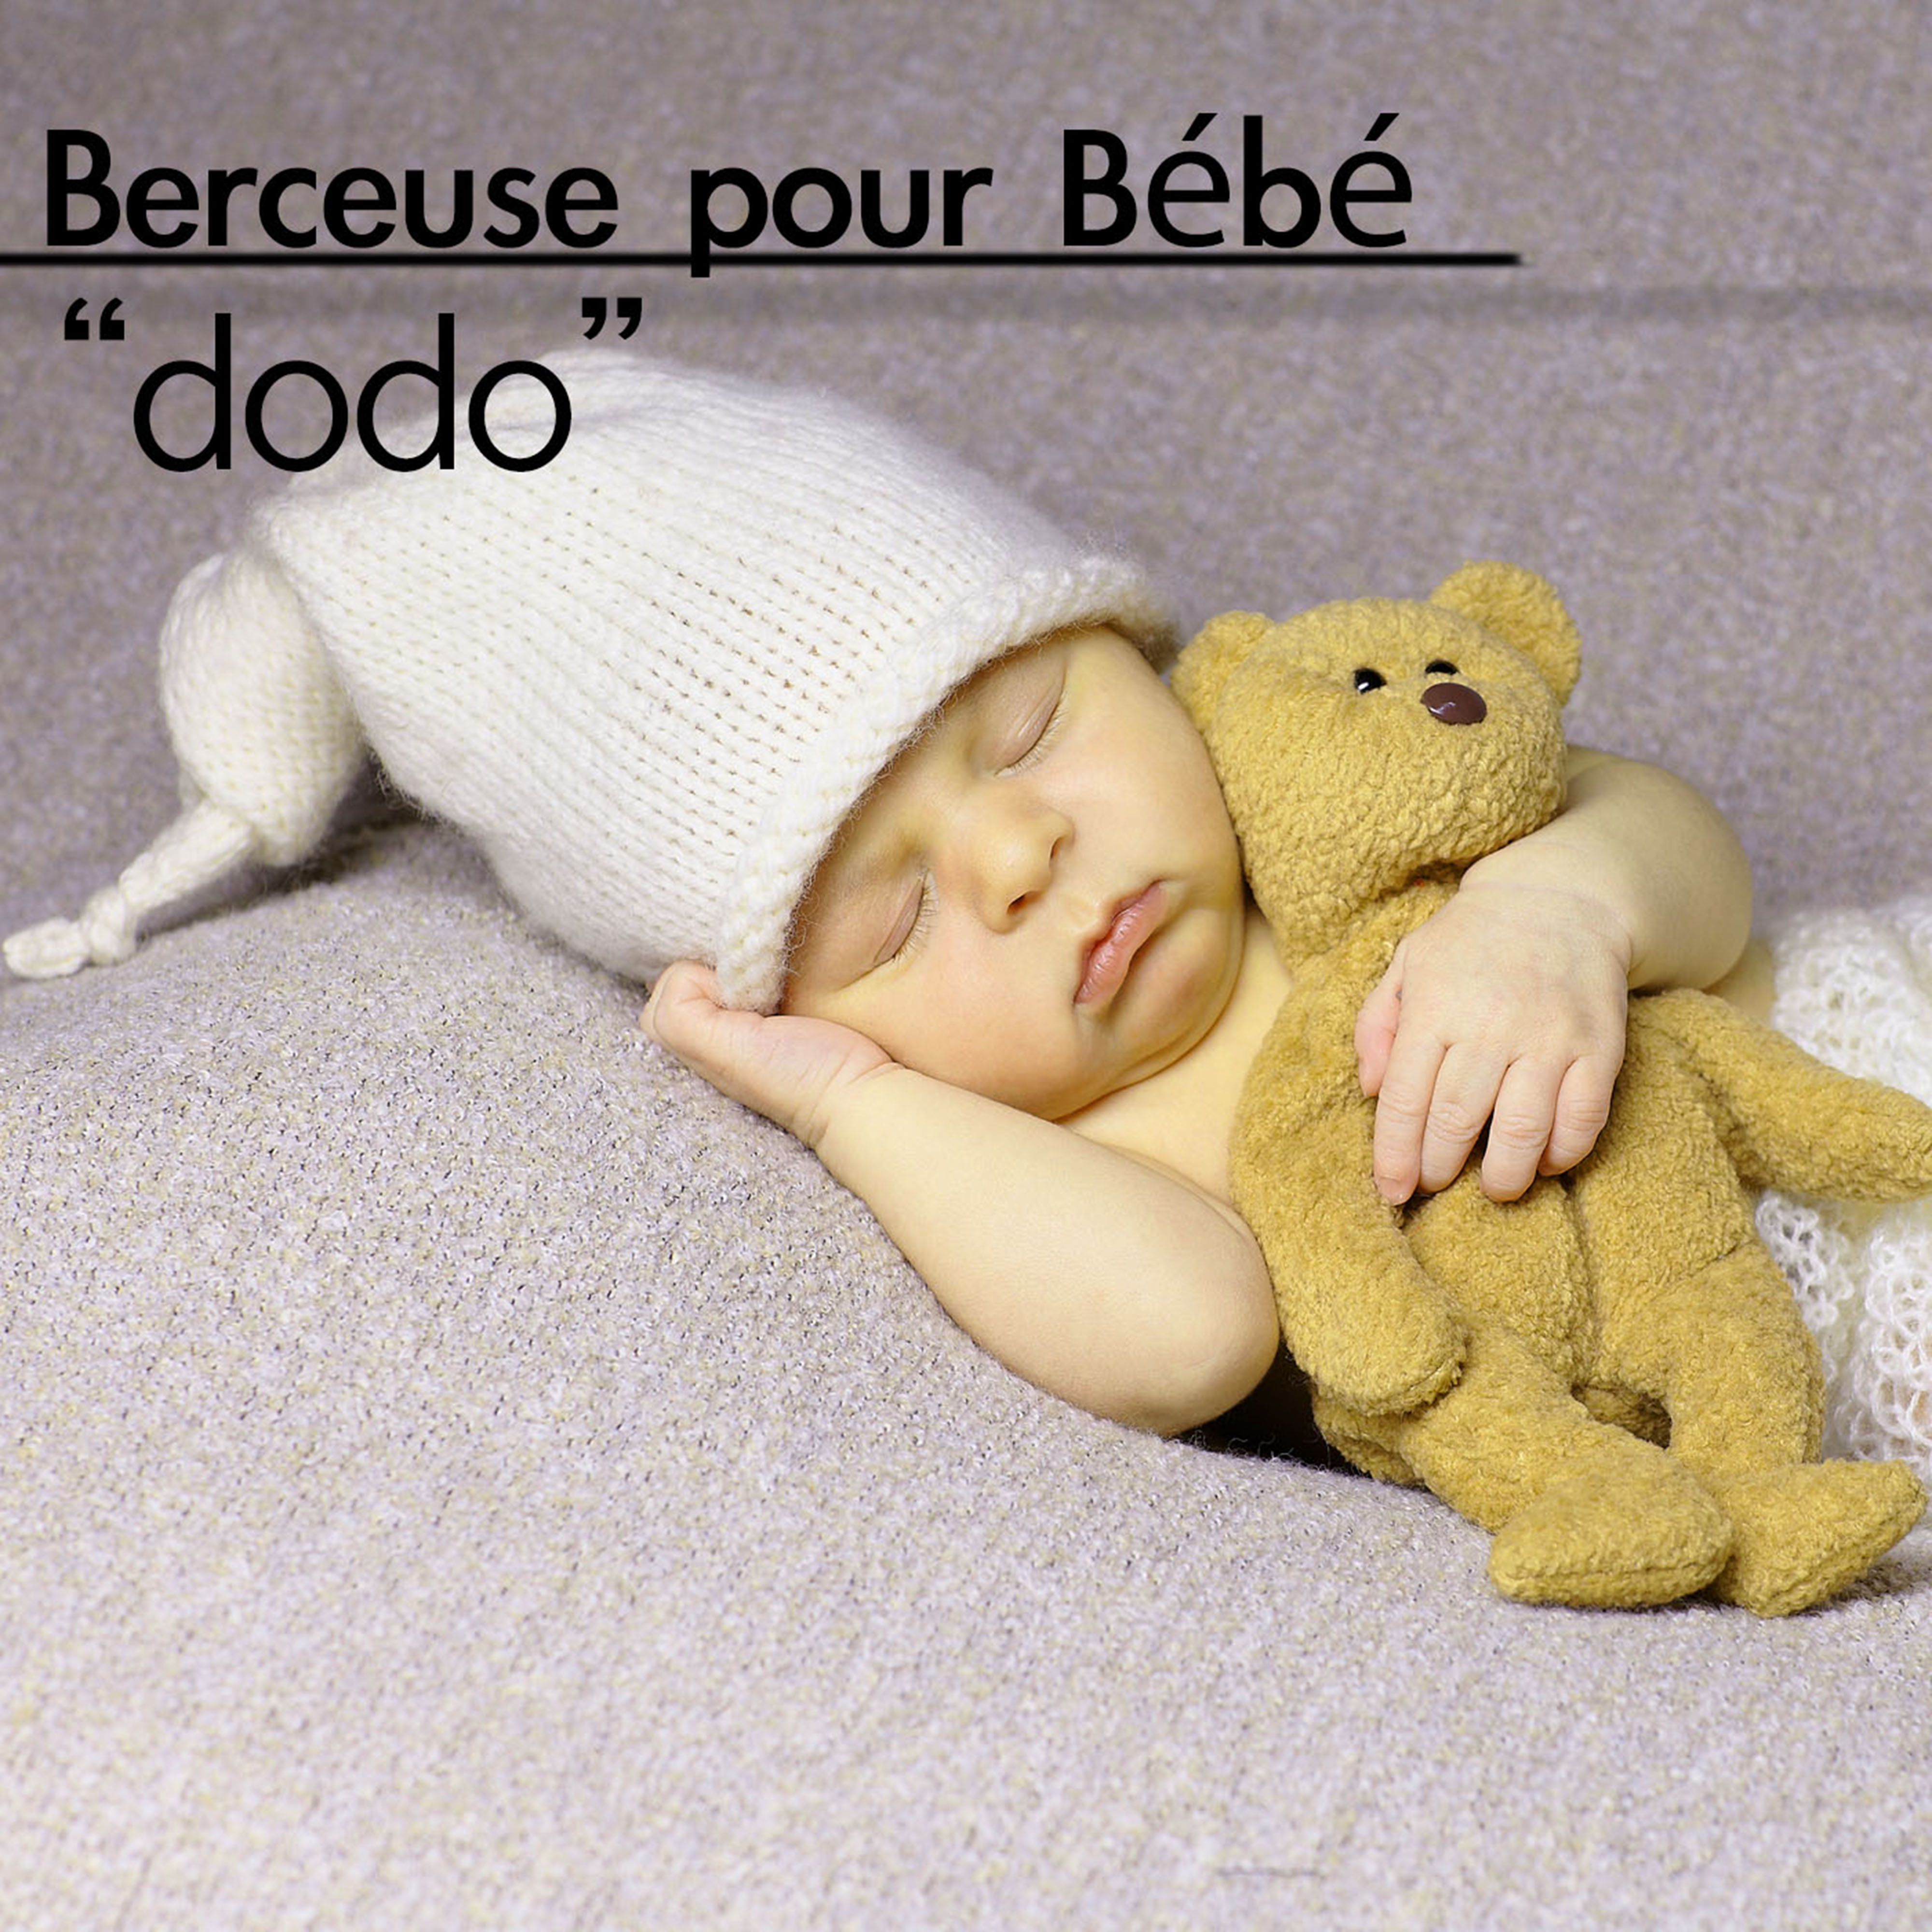 Berceuse pour Bébé Dodo – Musique pour enfant au piano, musique douce pour dormir y aider ton bébé faire dodo